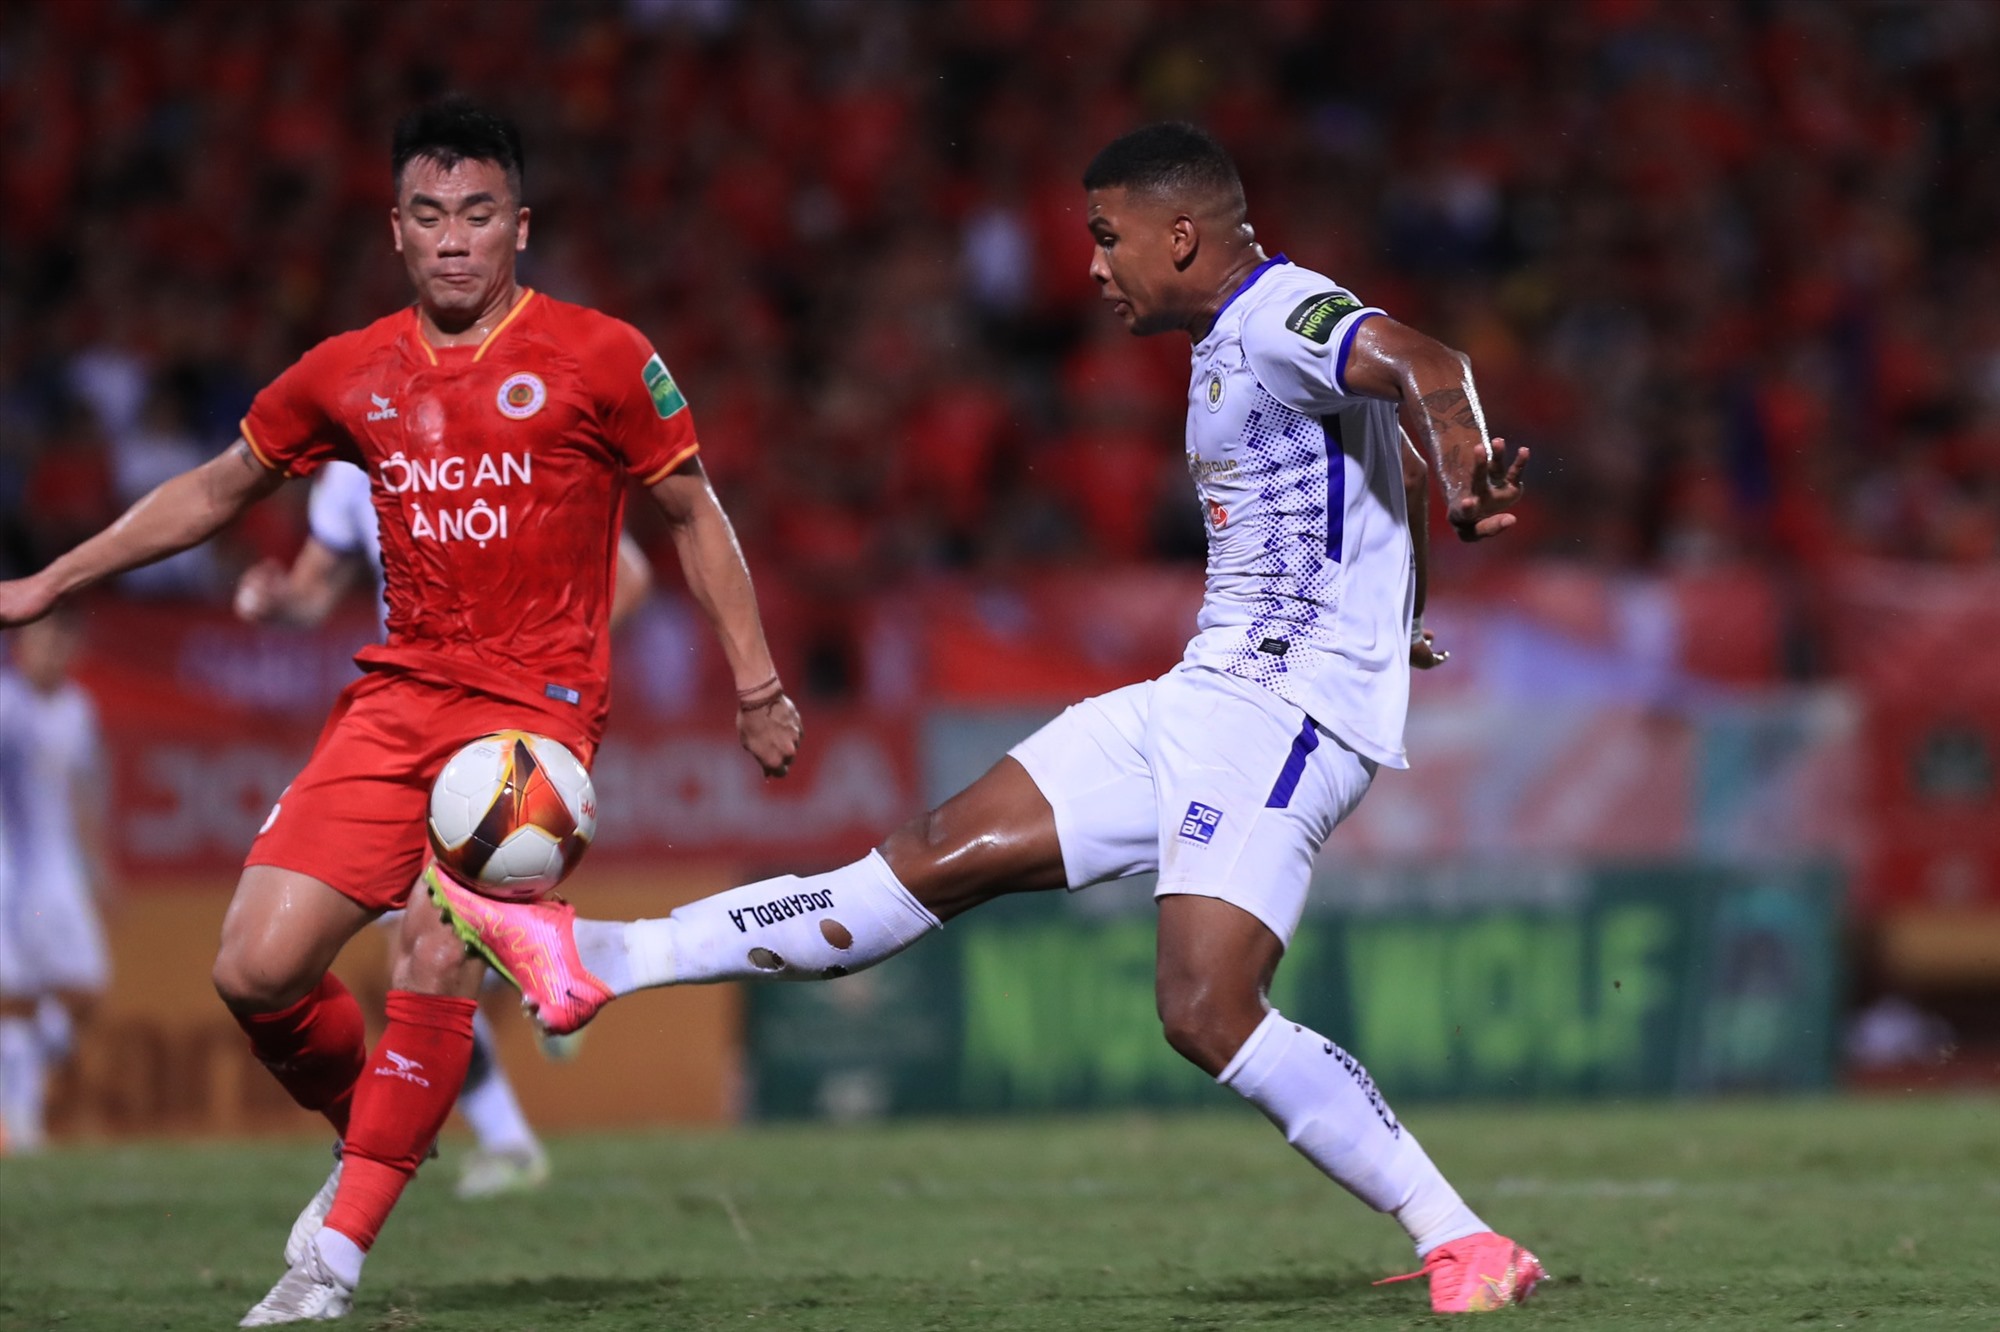 Câu lạc bộ Hà Nội FC gặp khó trước chủ nhà Công an Hà Nội tại vòng 5 giai đoạn 2 V.League 2023. Nhà đương kim vô địch rơi vào thế bị động trước sự dồn ép và tấn công của đội bóng tân binh. 